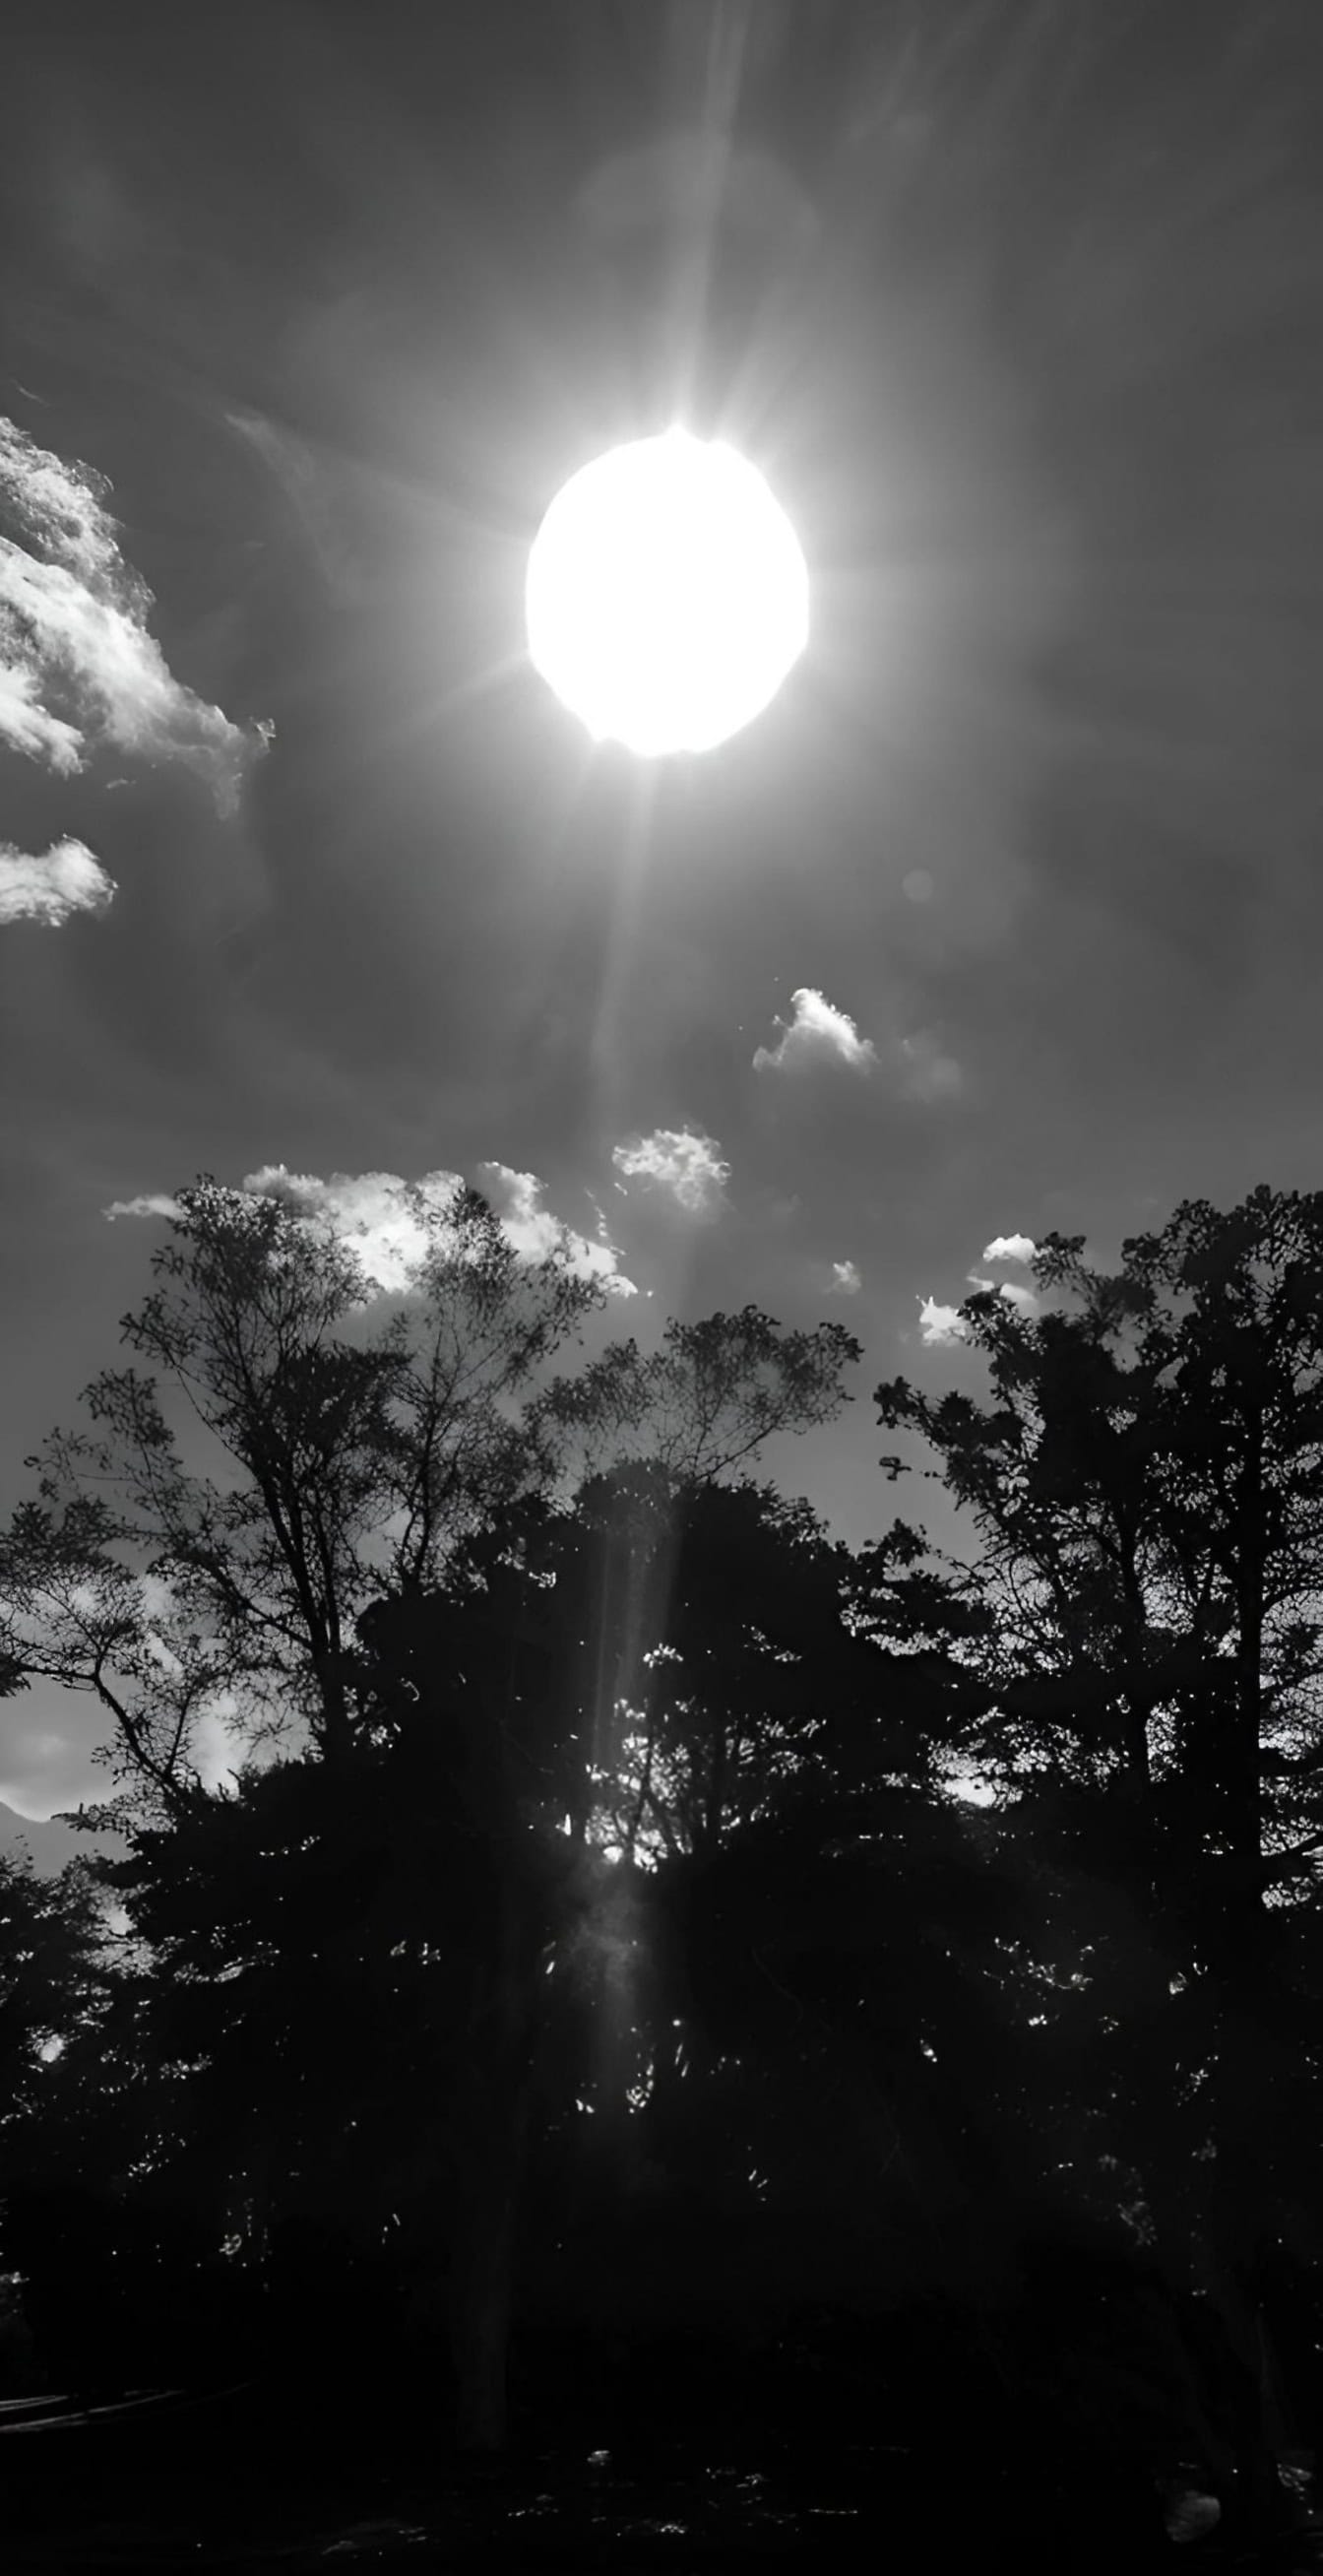 Černobílá fotografie slunce prosvítajícího skrz mraky se siluetou stromů